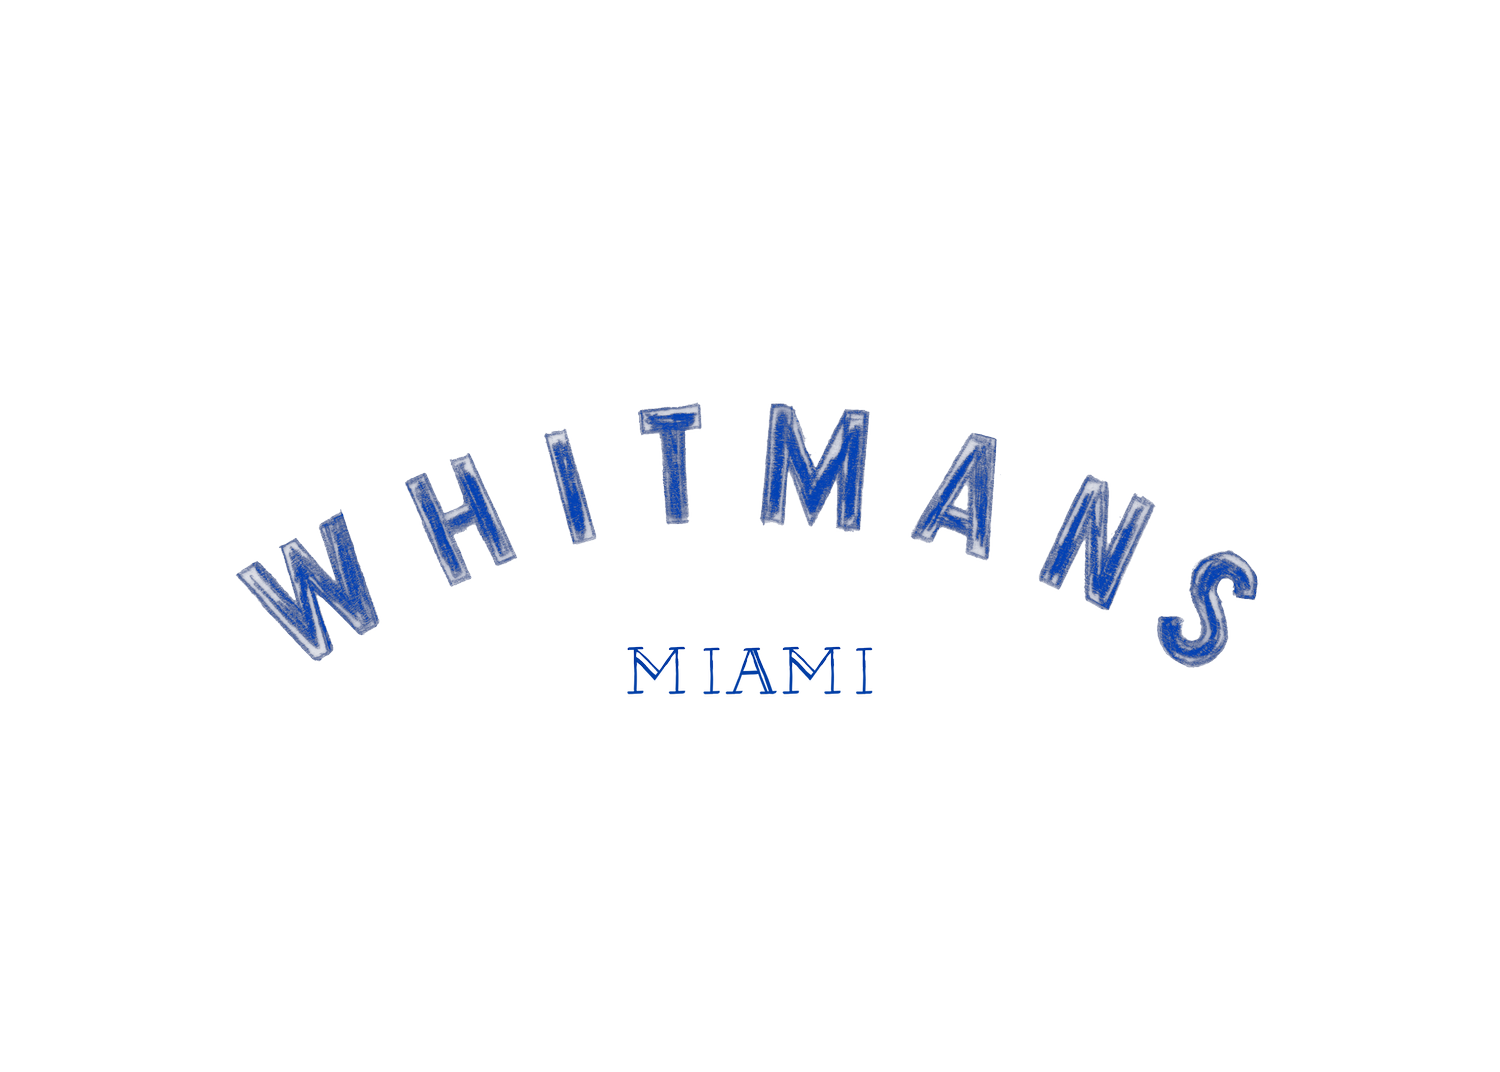 Whitmans Miami